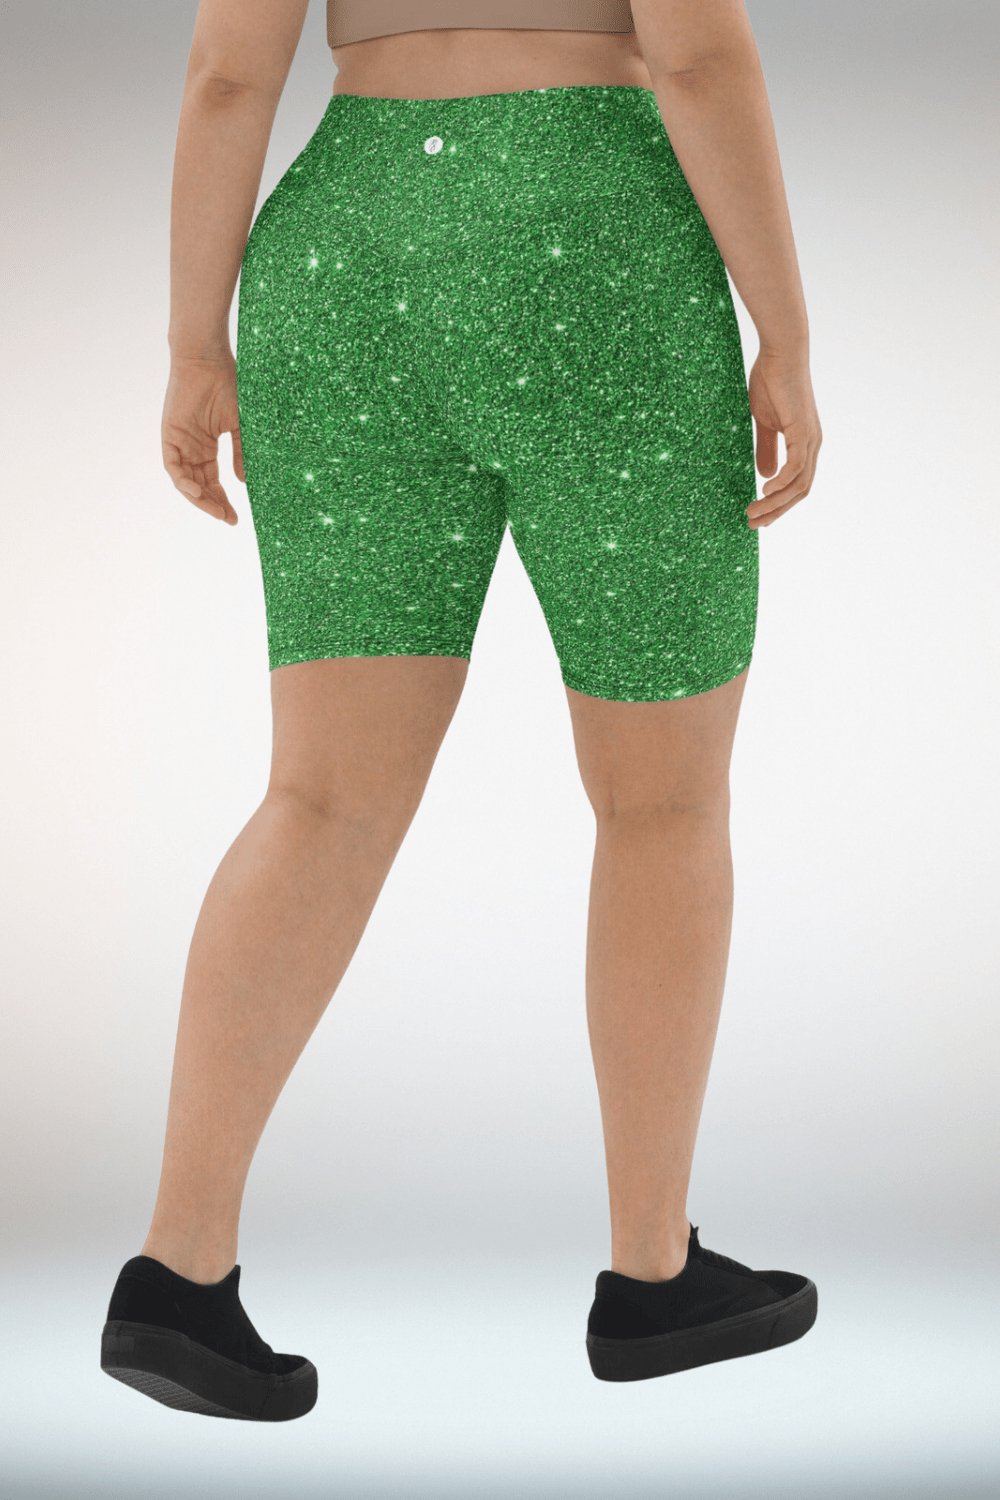 Glitter Print Green Biker Shorts - TGC Boutique - Shorts